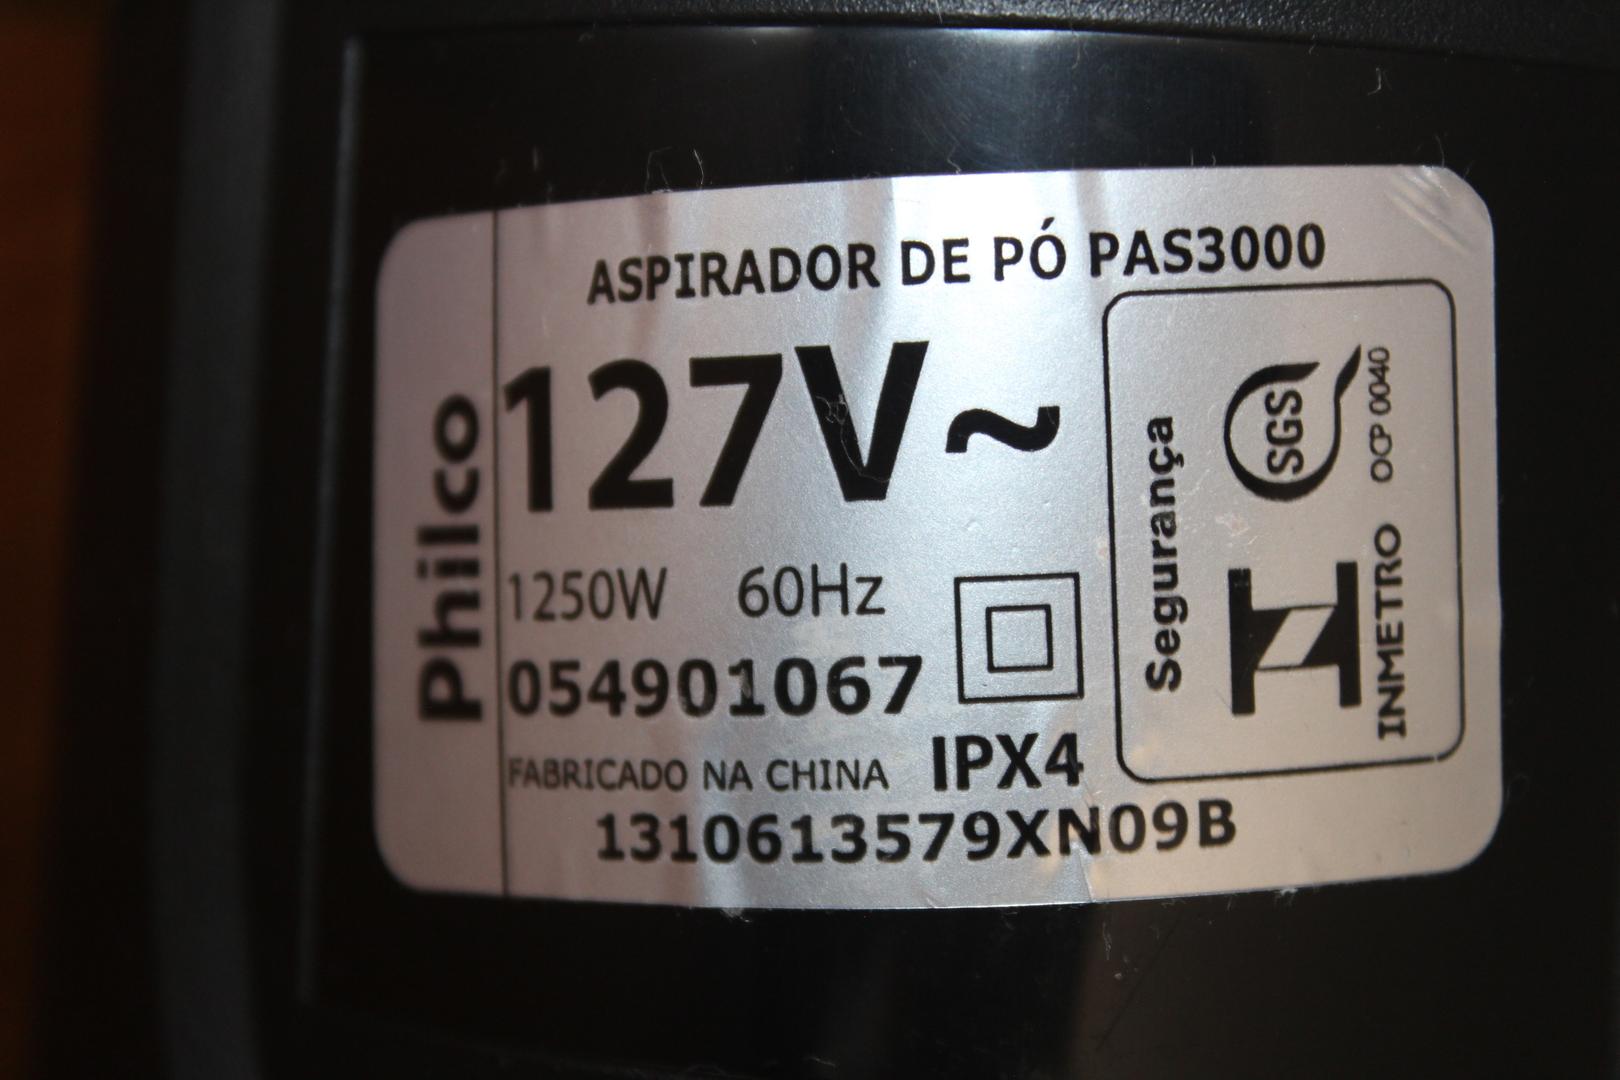 Aspirador de Pó e Água 1250W Philco PAS3000 em Plástico Preto 100 cm x 25 cm x 15 cm